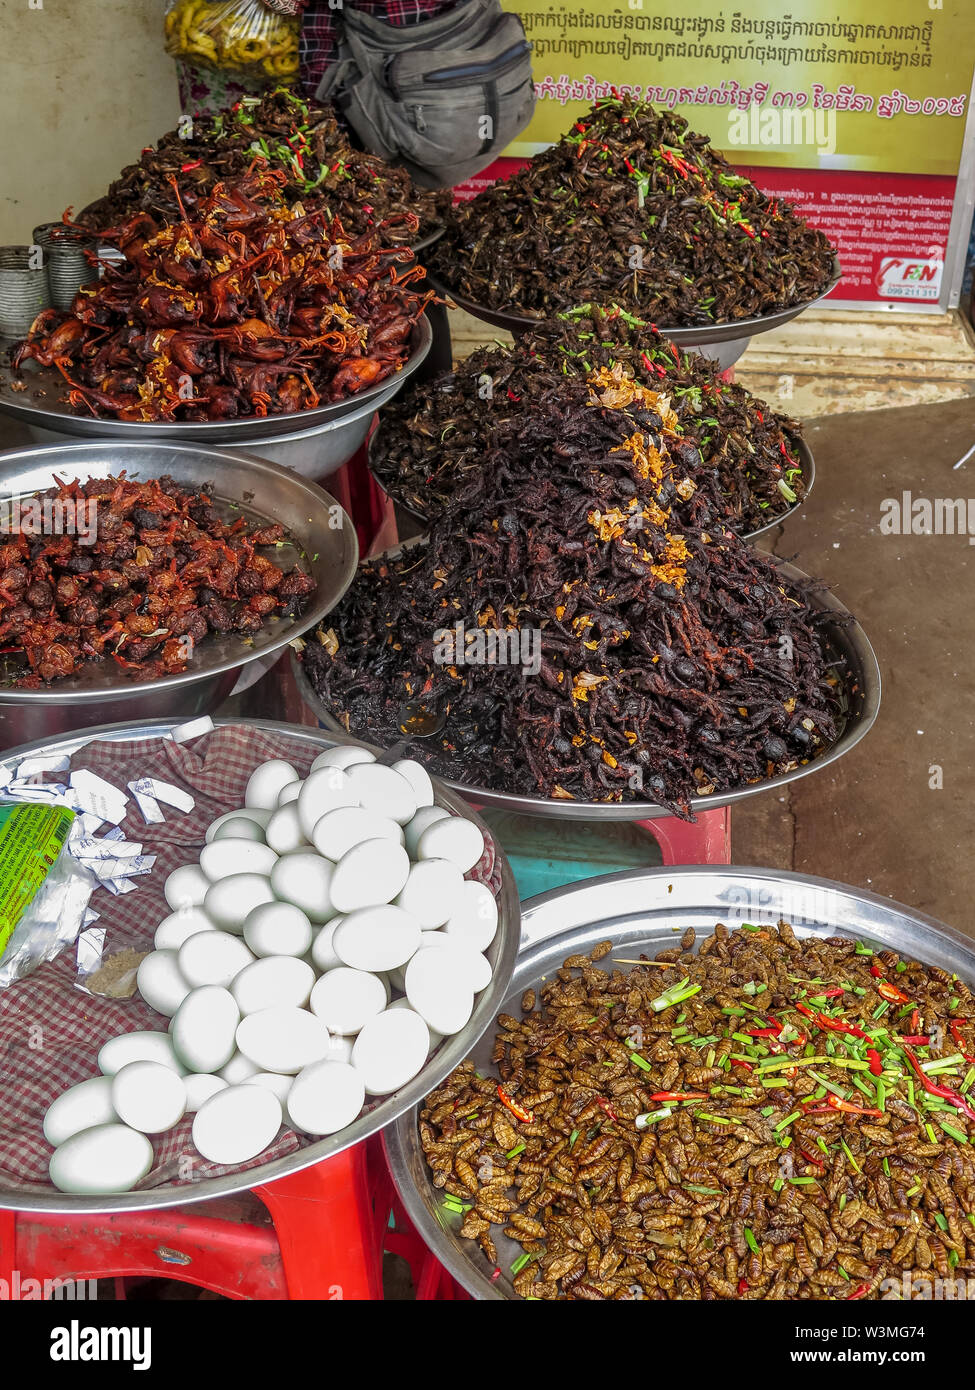 Ragni, grilli, scarafaggi e altri insetti fritti in un mercato cambogiano Foto Stock